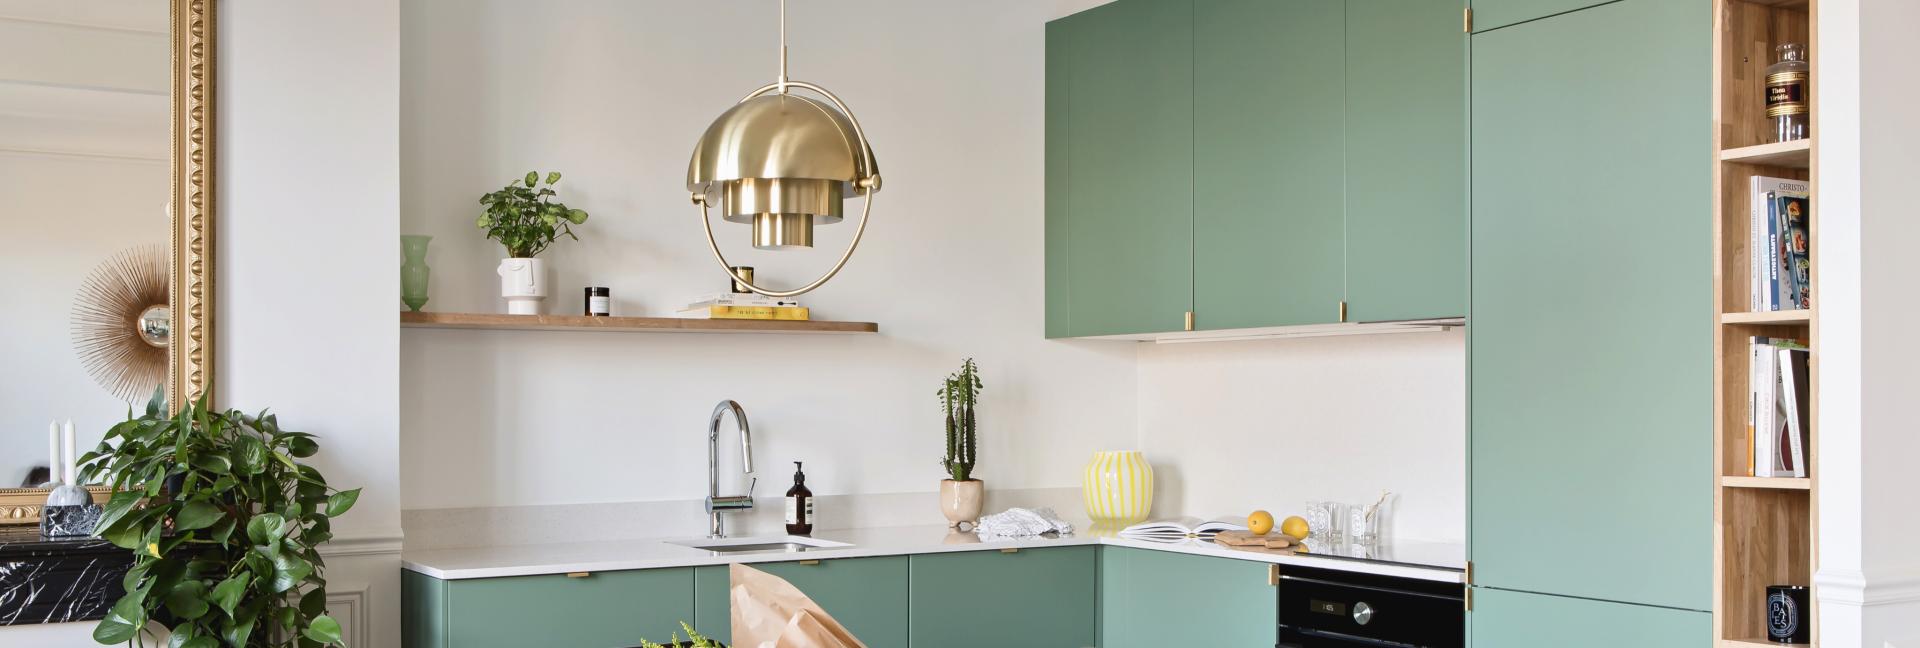 Küche in Grün 03 - Vert de gris, schöne Küchenleuchte